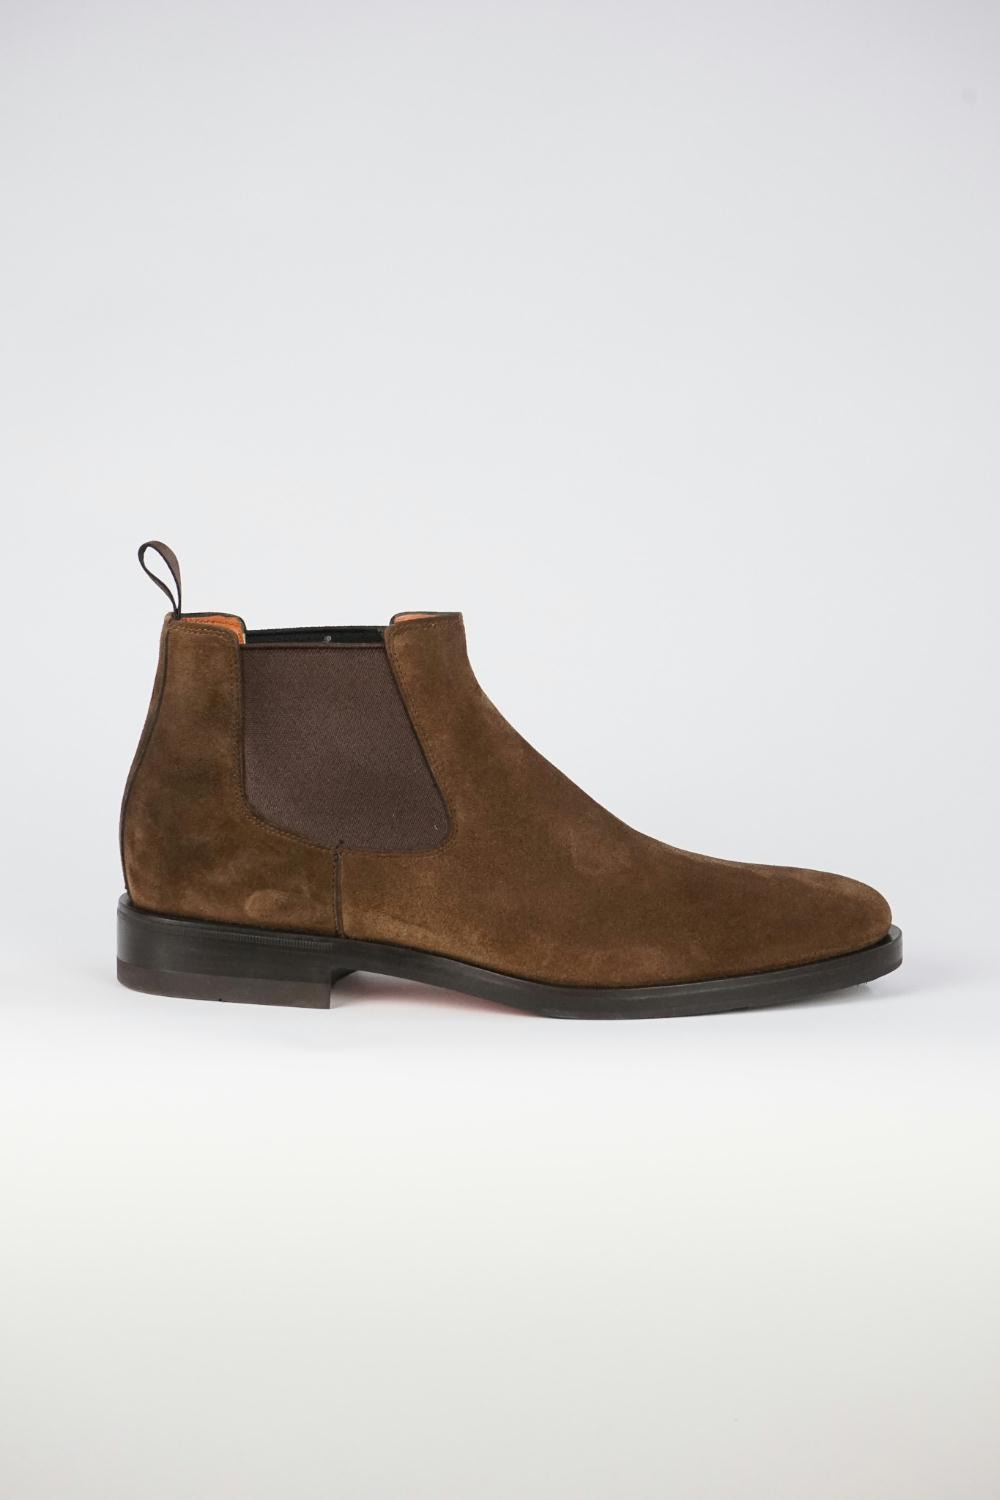 Opstand Aanvankelijk Sympathiek Santoni - Bruine Suede Ankle boots - Zoetelief Mode